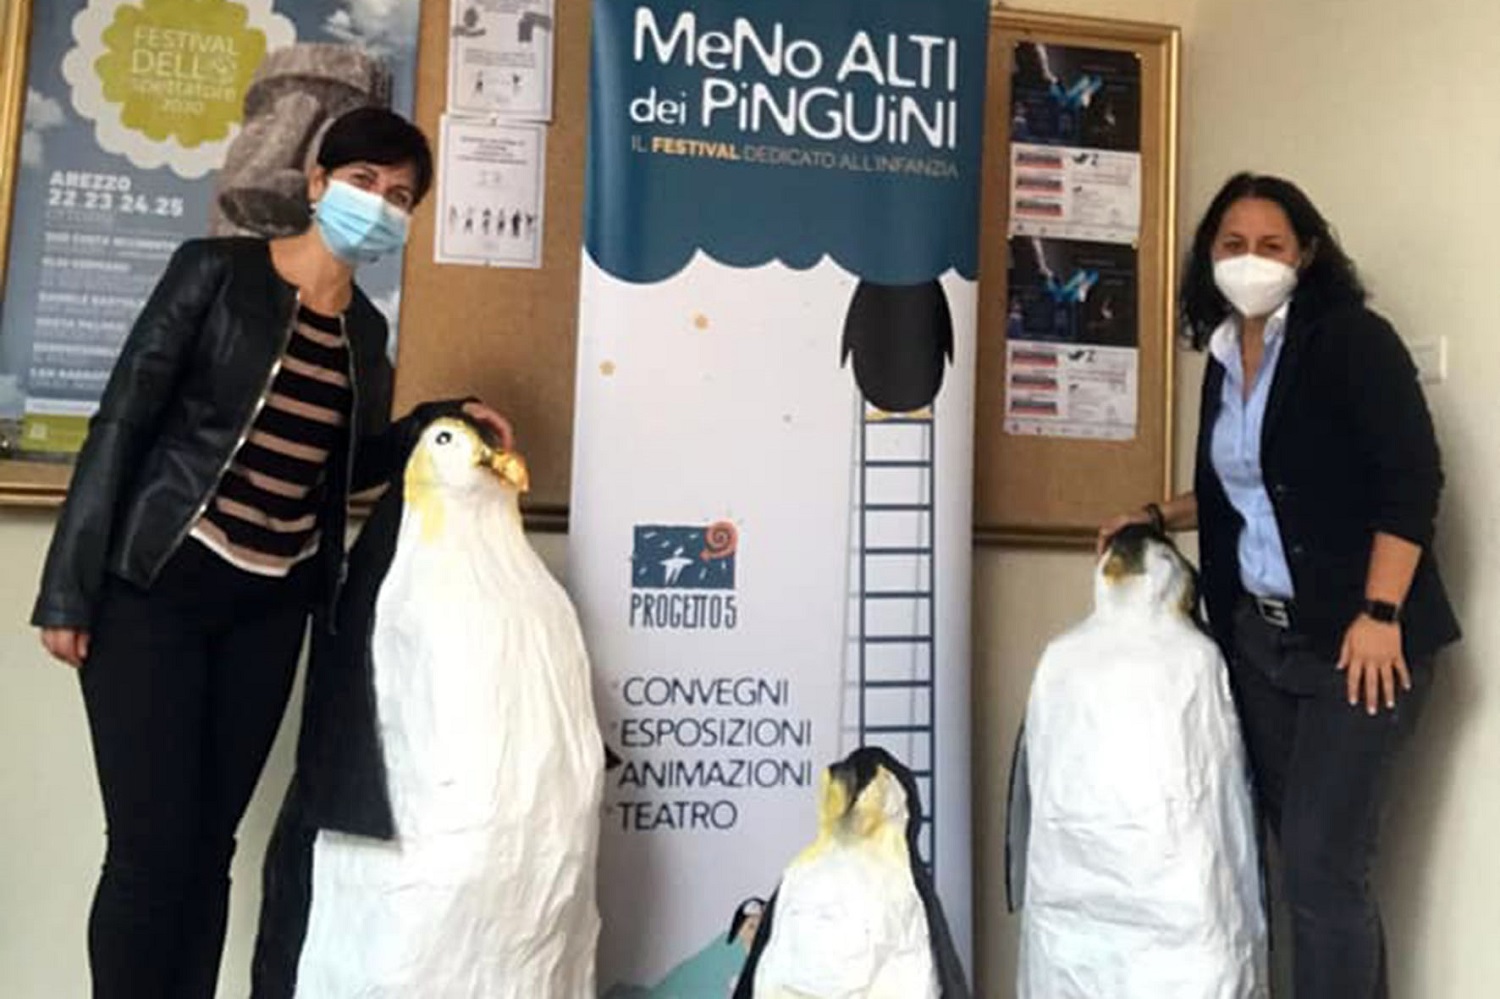 Meno alti dei pinguini - Progetto 5 - Arezzo